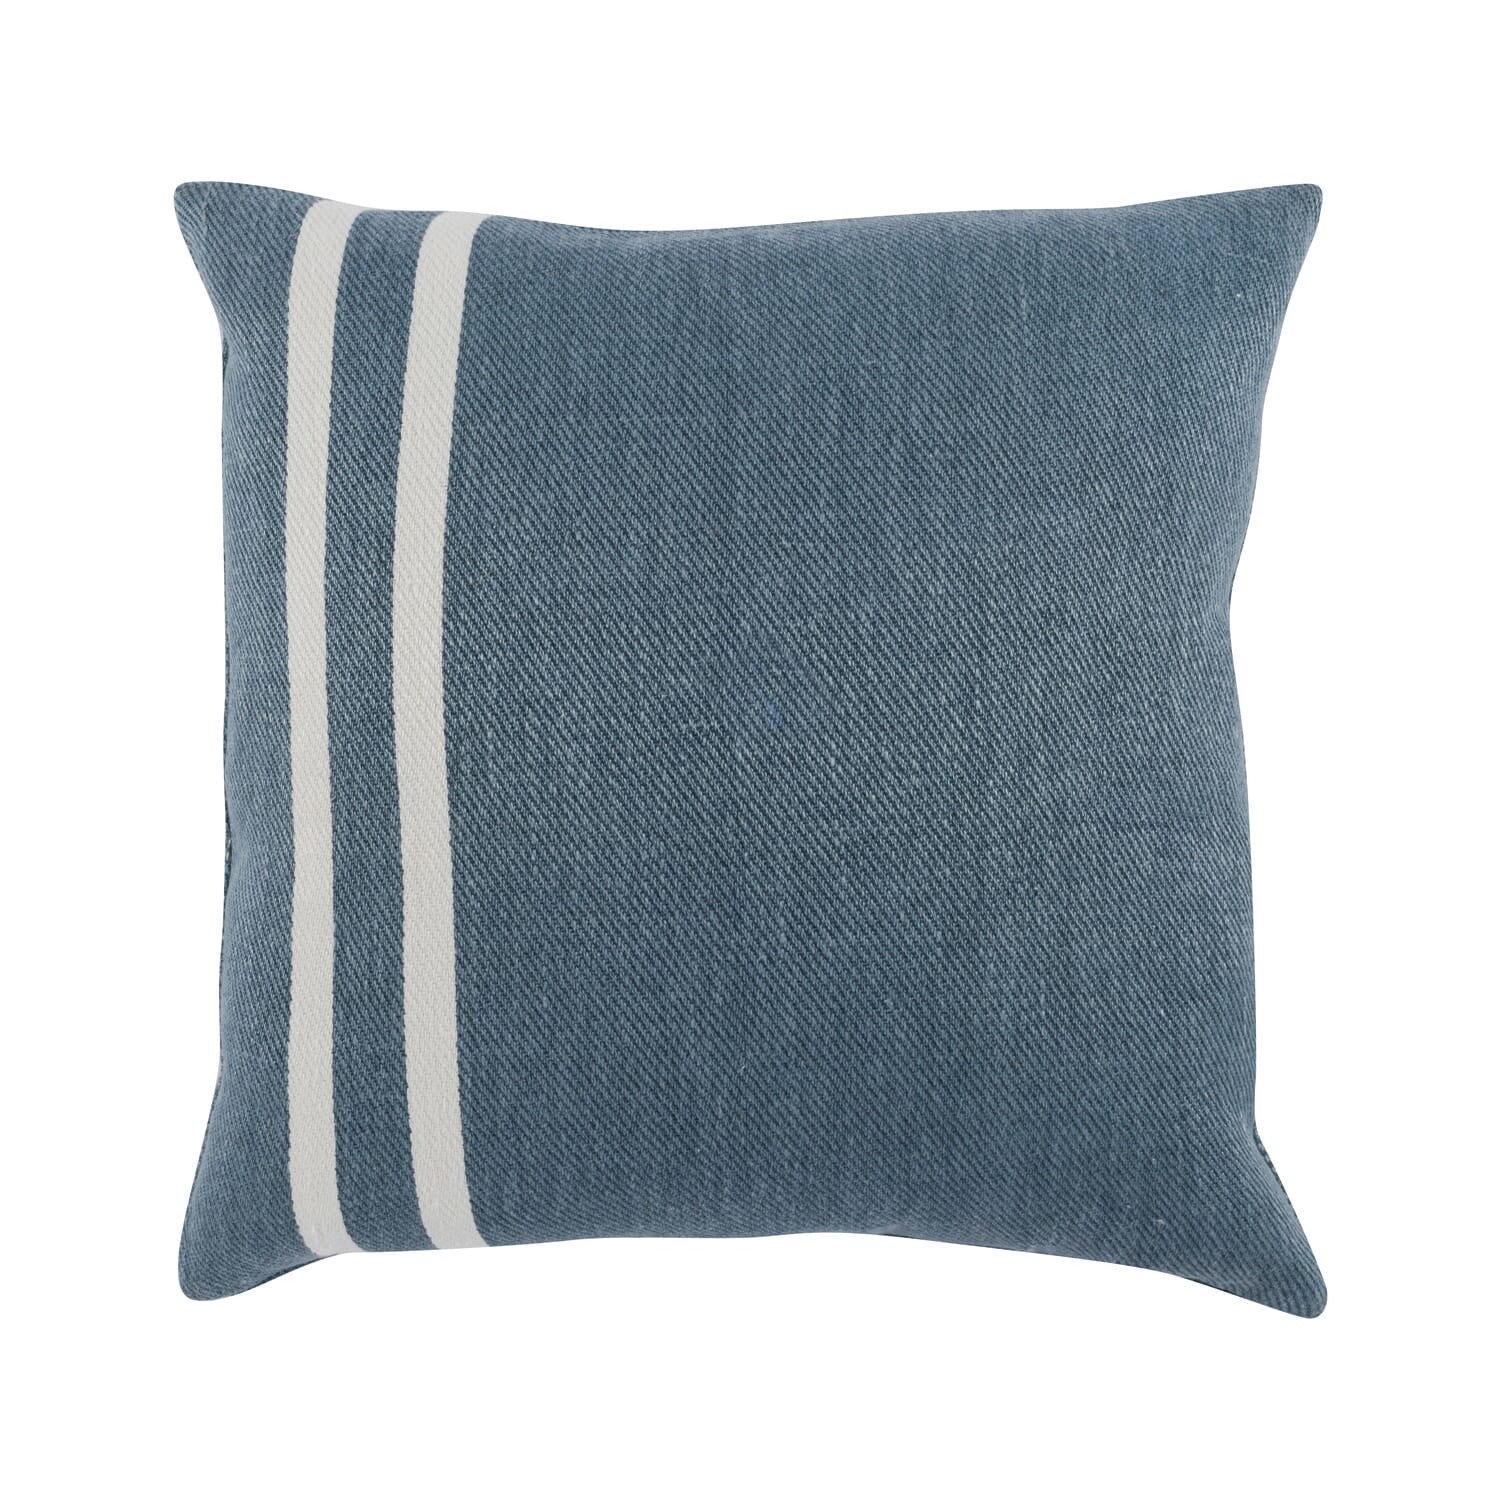 Lakeshore Blue 20x20 Pillow